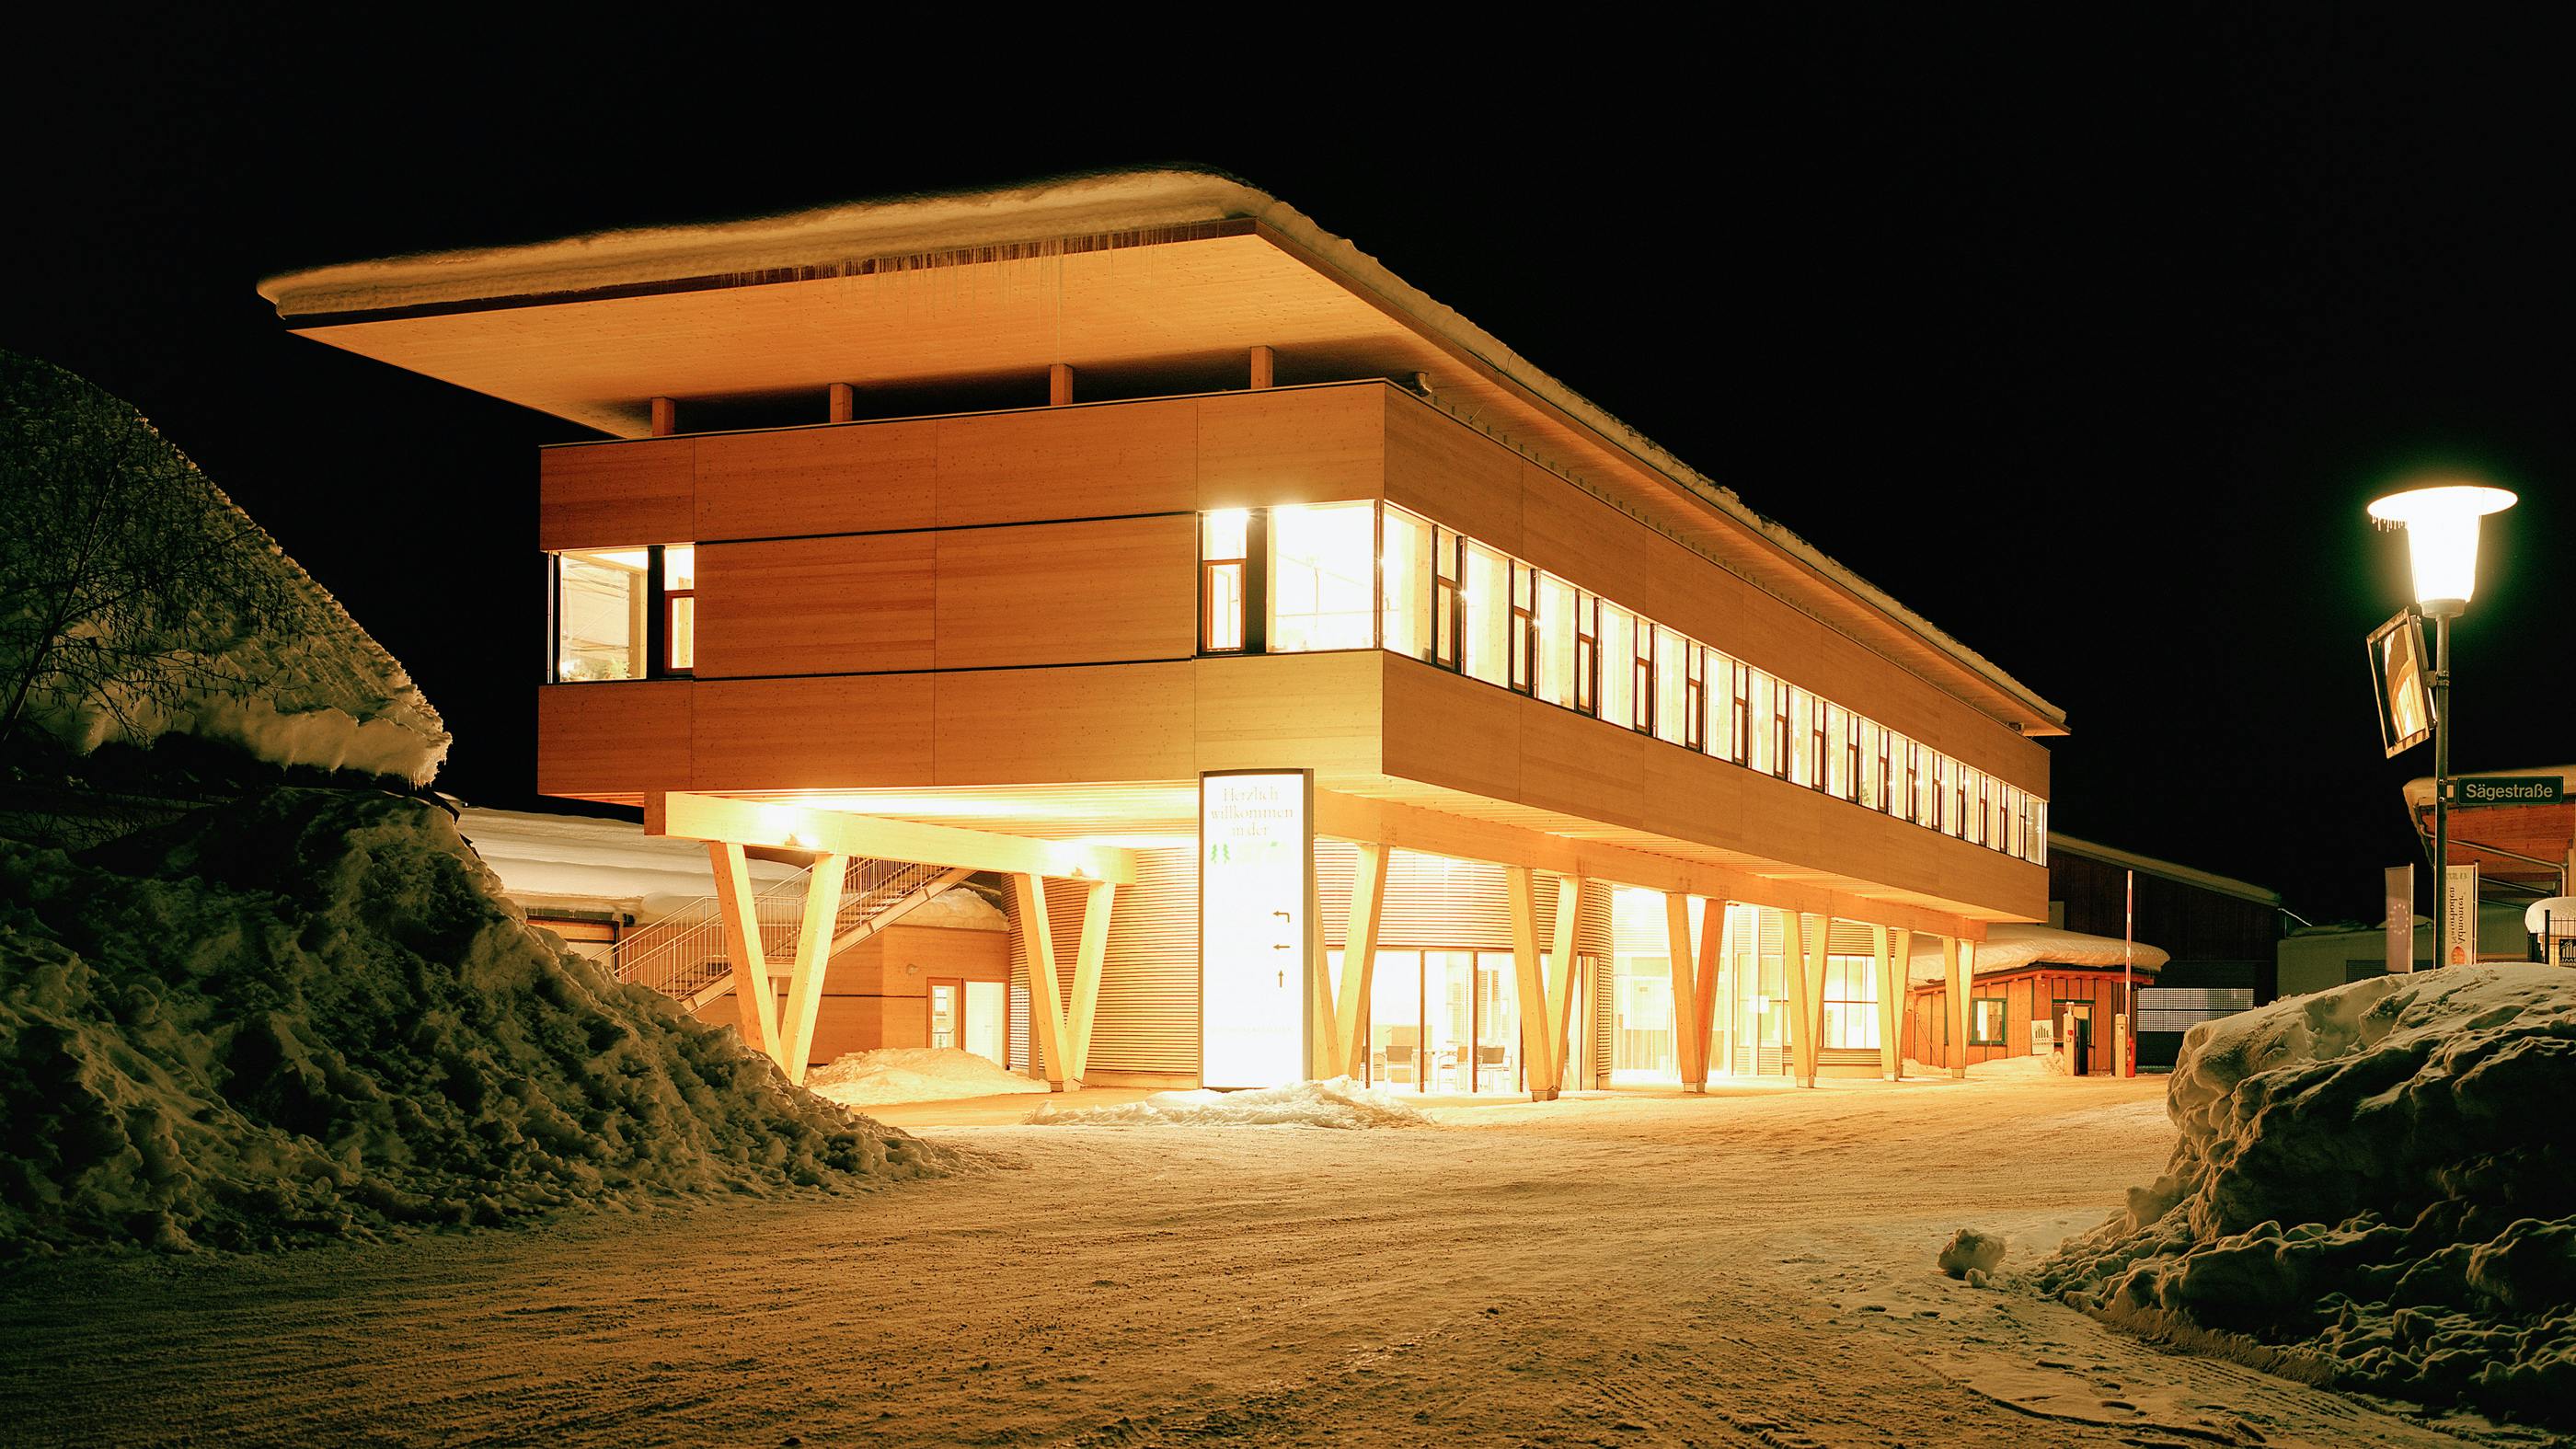 Wir sehen eine Nachtaufnahme eines längeren Gebäude, das komplett aus Holz besteht und von innen voll beleuchtet ist. 